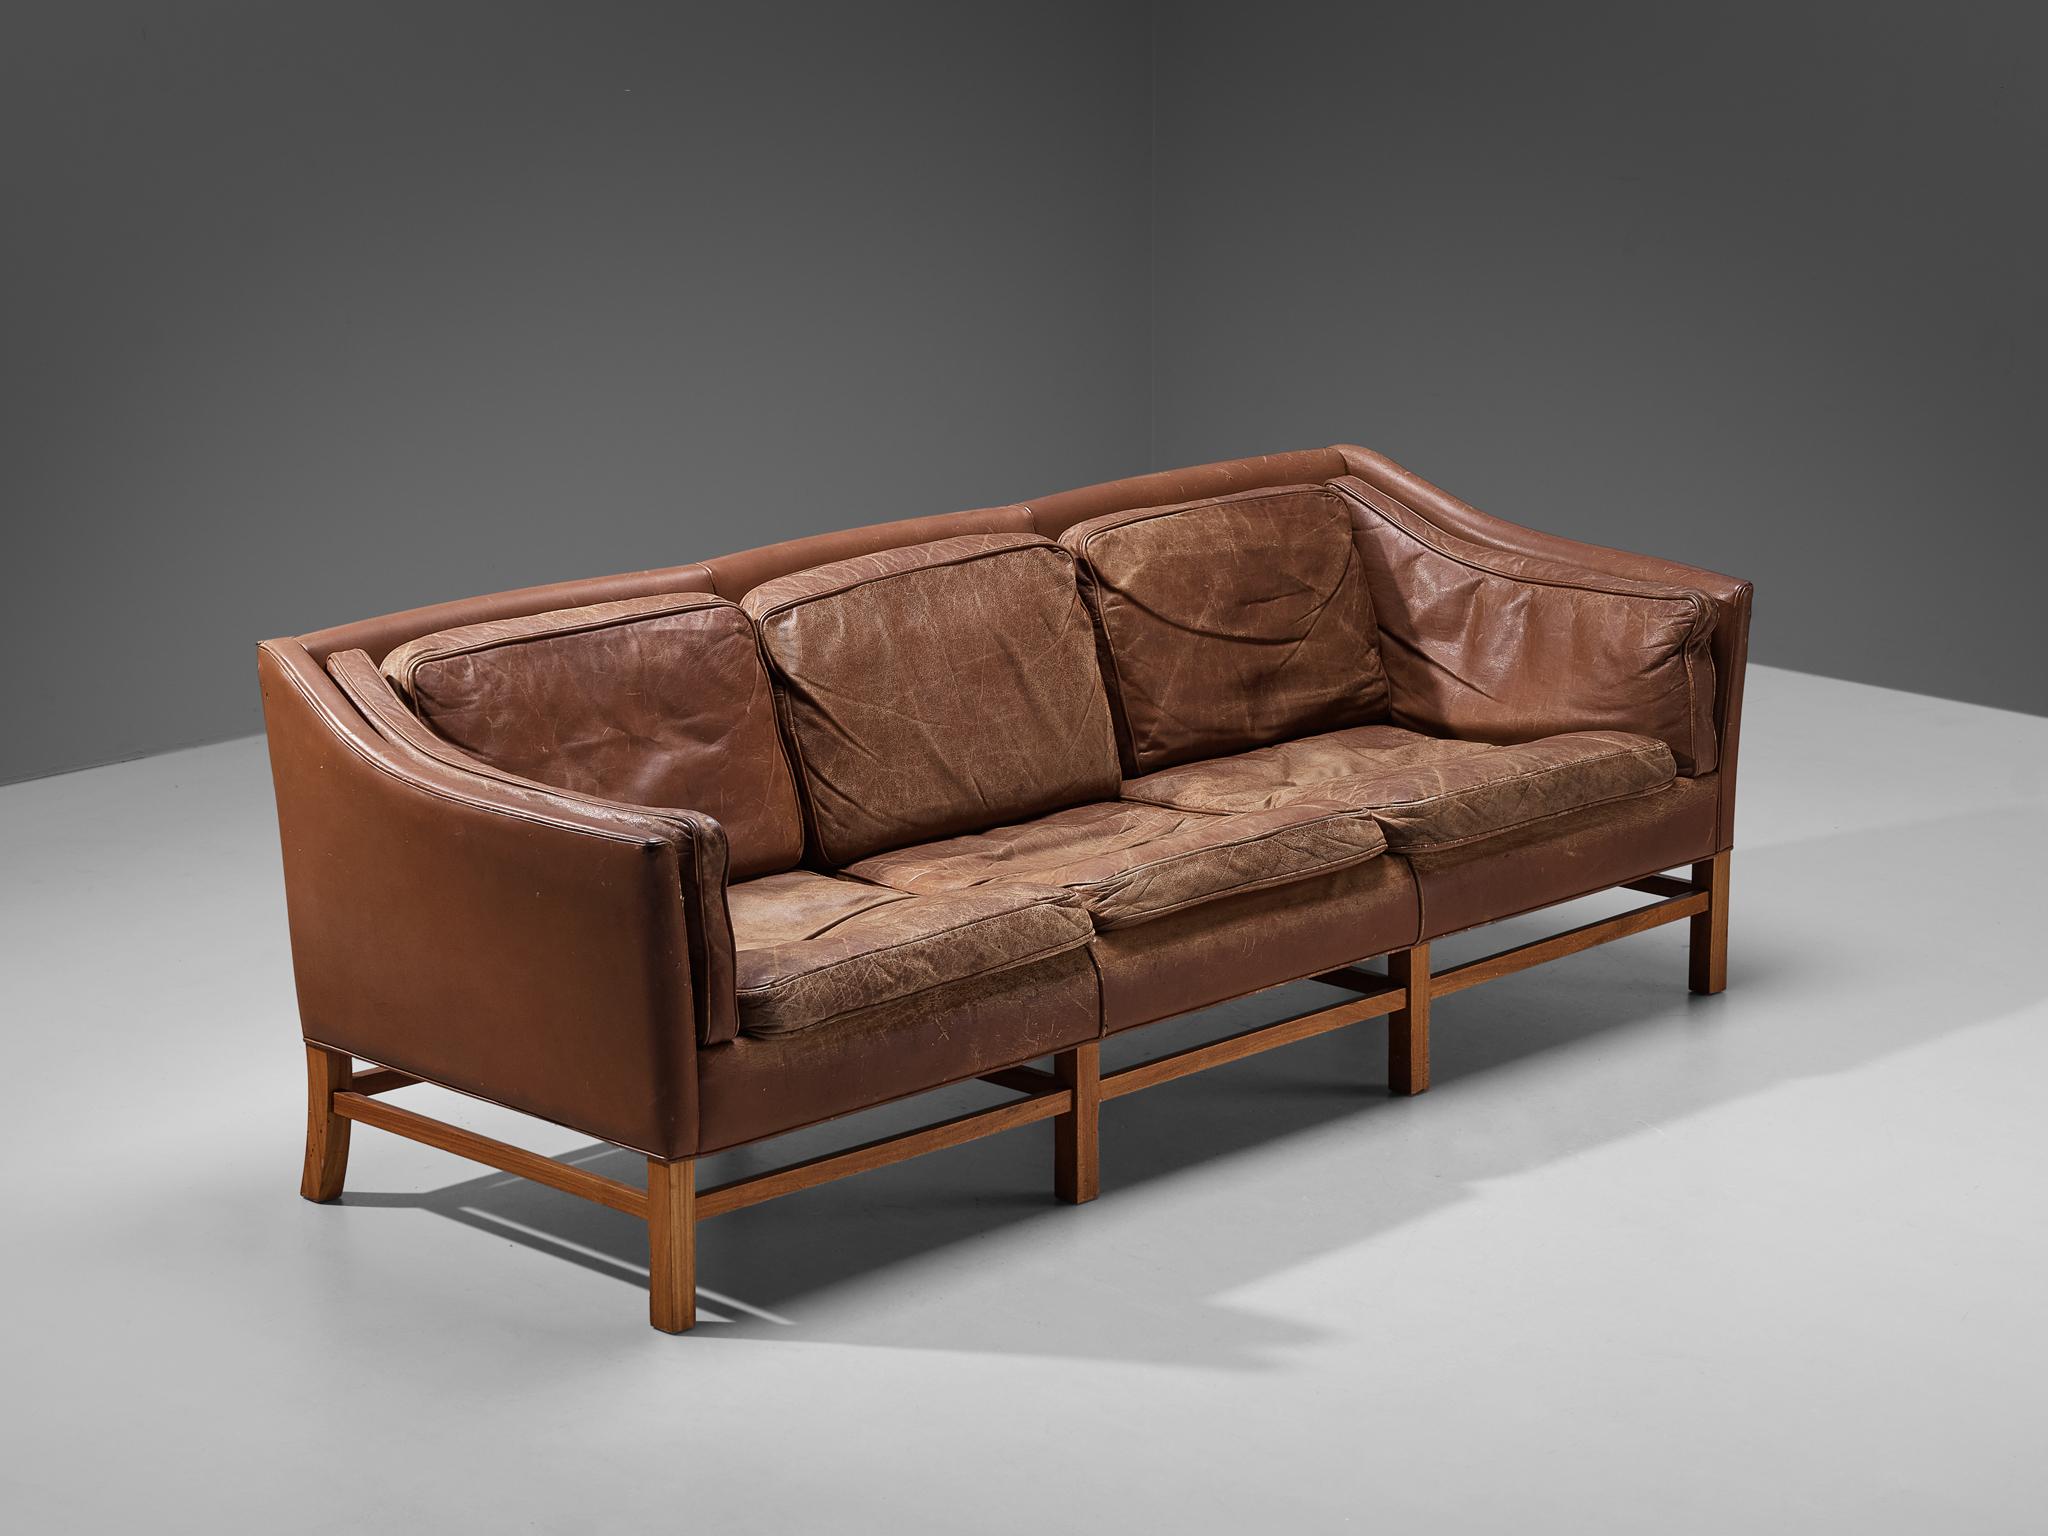 Canapé, cuir brun, acajou teinté, Danemark, années 1960

Ce canapé classique d'origine danoise présente des lignes et des formes modestes et subtiles qui soulignent la construction claire du design. Le canapé repose sur un piètement bien